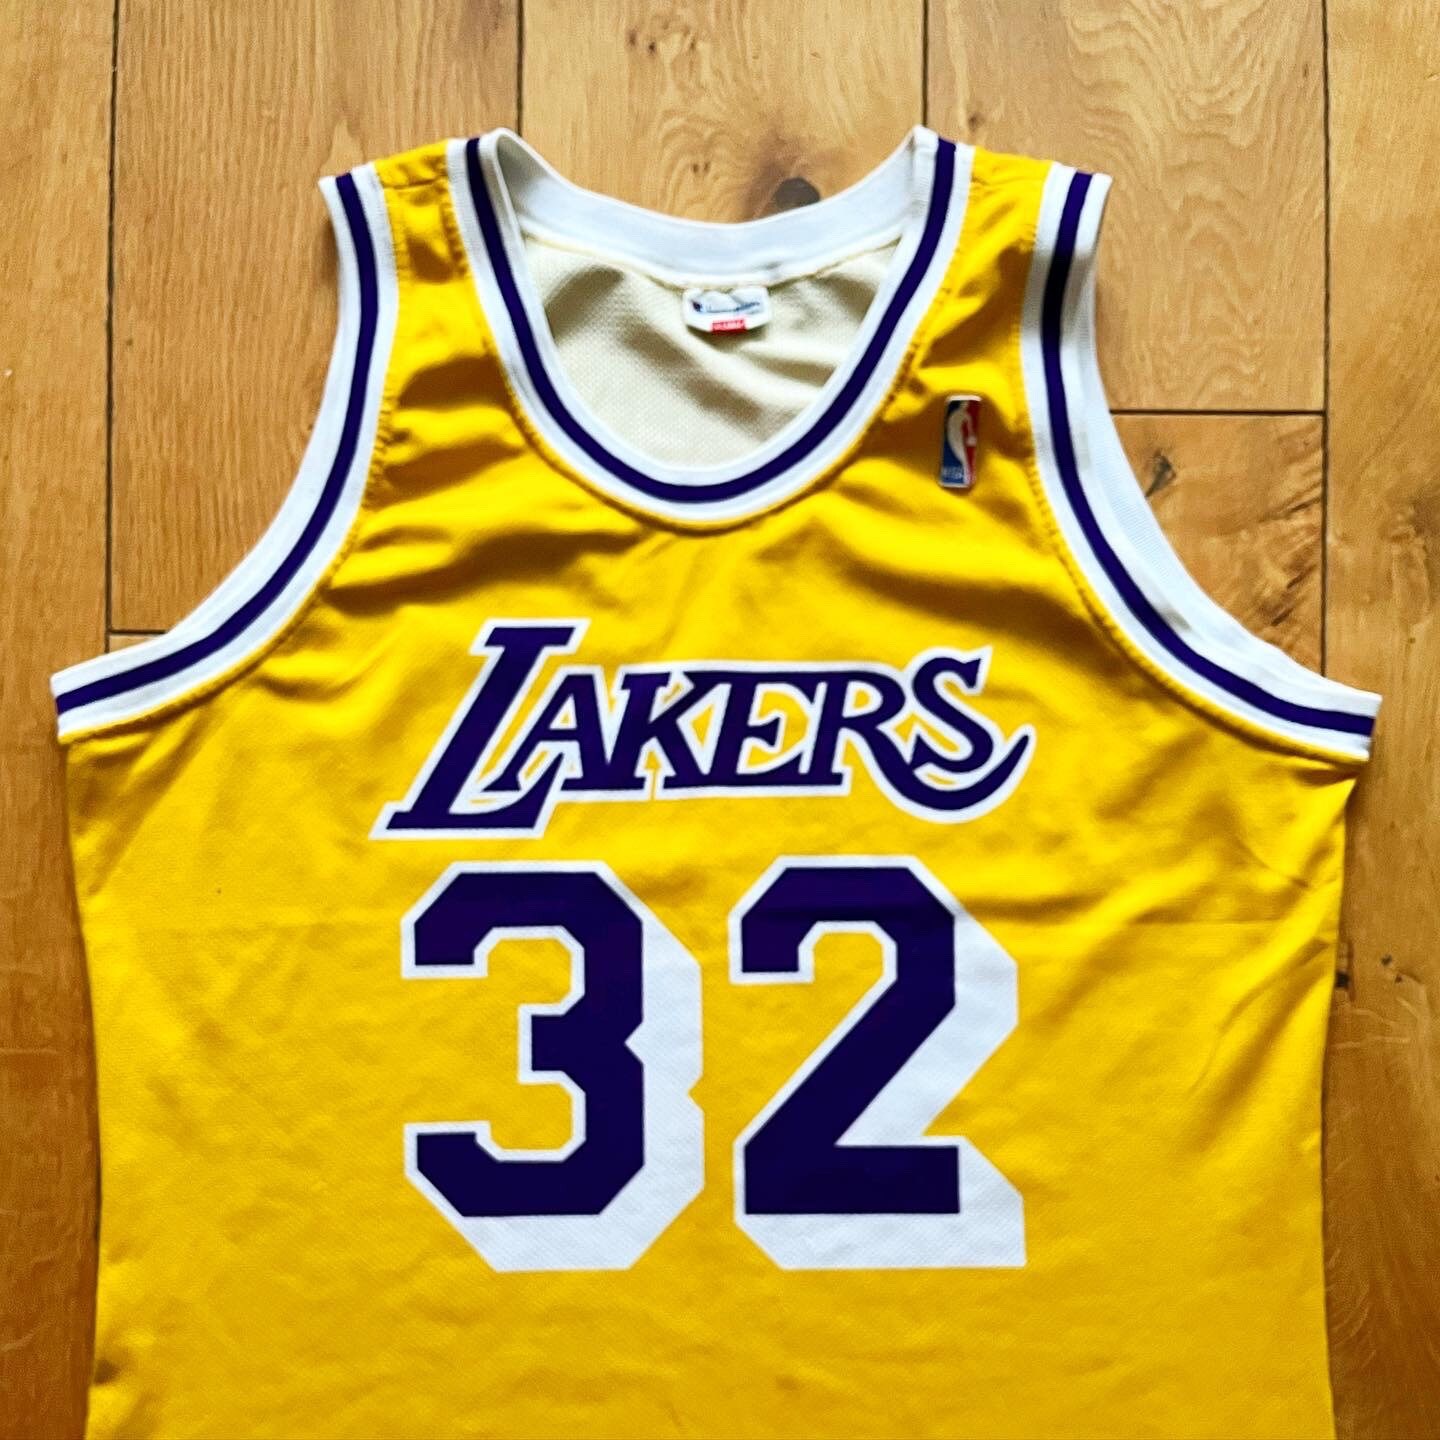 1991-92 yellow LA Lakers Champion Magic Johnson #32 basketball